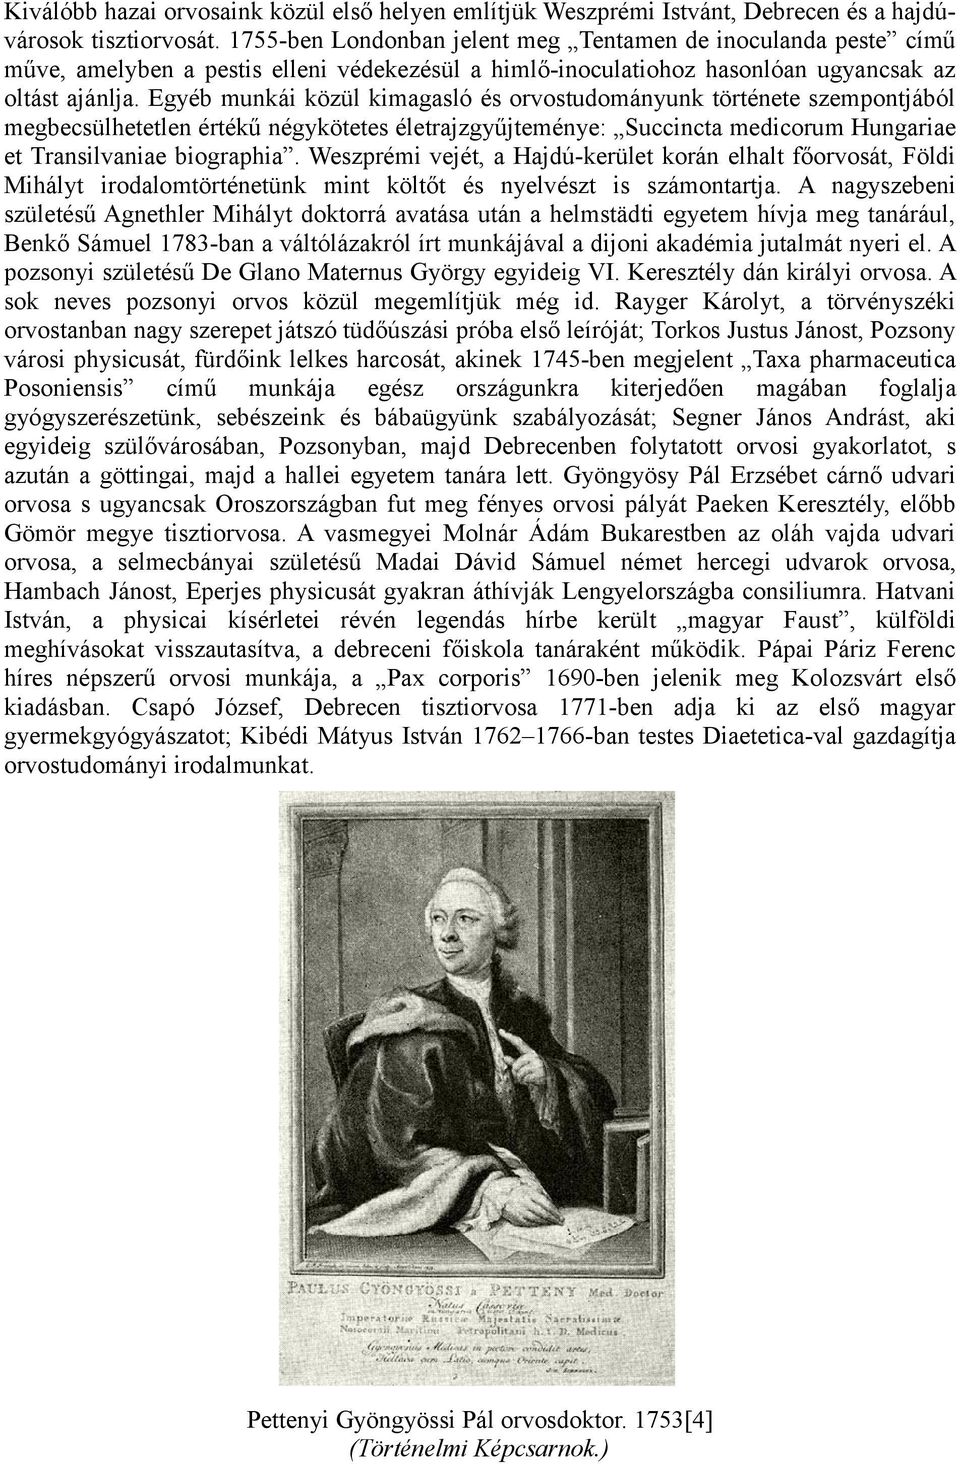 Egyéb munkái közül kimagasló és orvostudományunk története szempontjából megbecsülhetetlen értékű négykötetes életrajzgyűjteménye: Succincta medicorum Hungariae et Transilvaniae biographia.